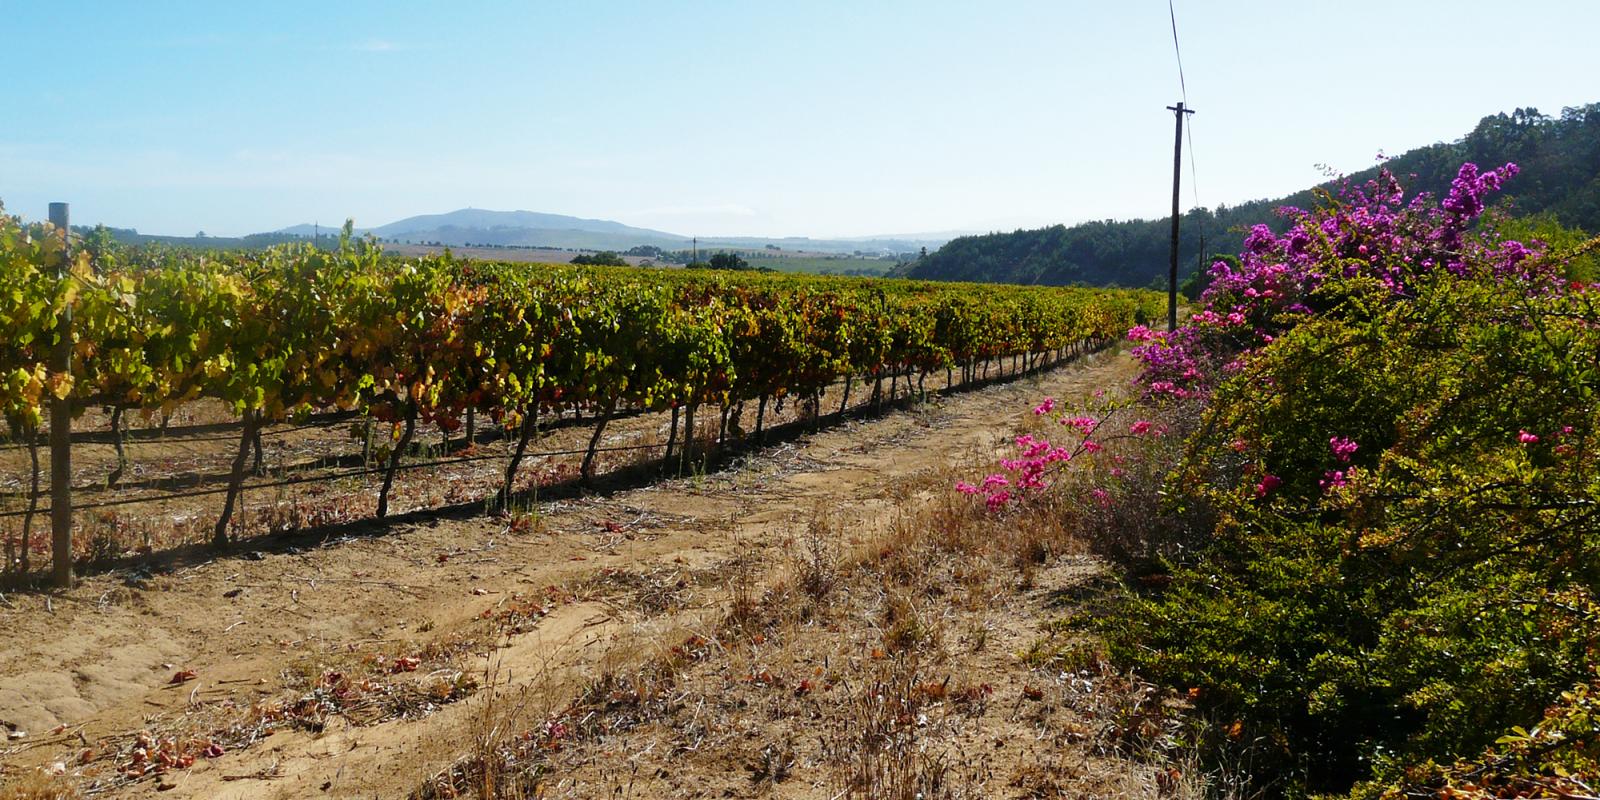 Op wijntoer door de wijngebieden van Franschhoek, Paarl en Stellenbosch in Zuid-Afrika